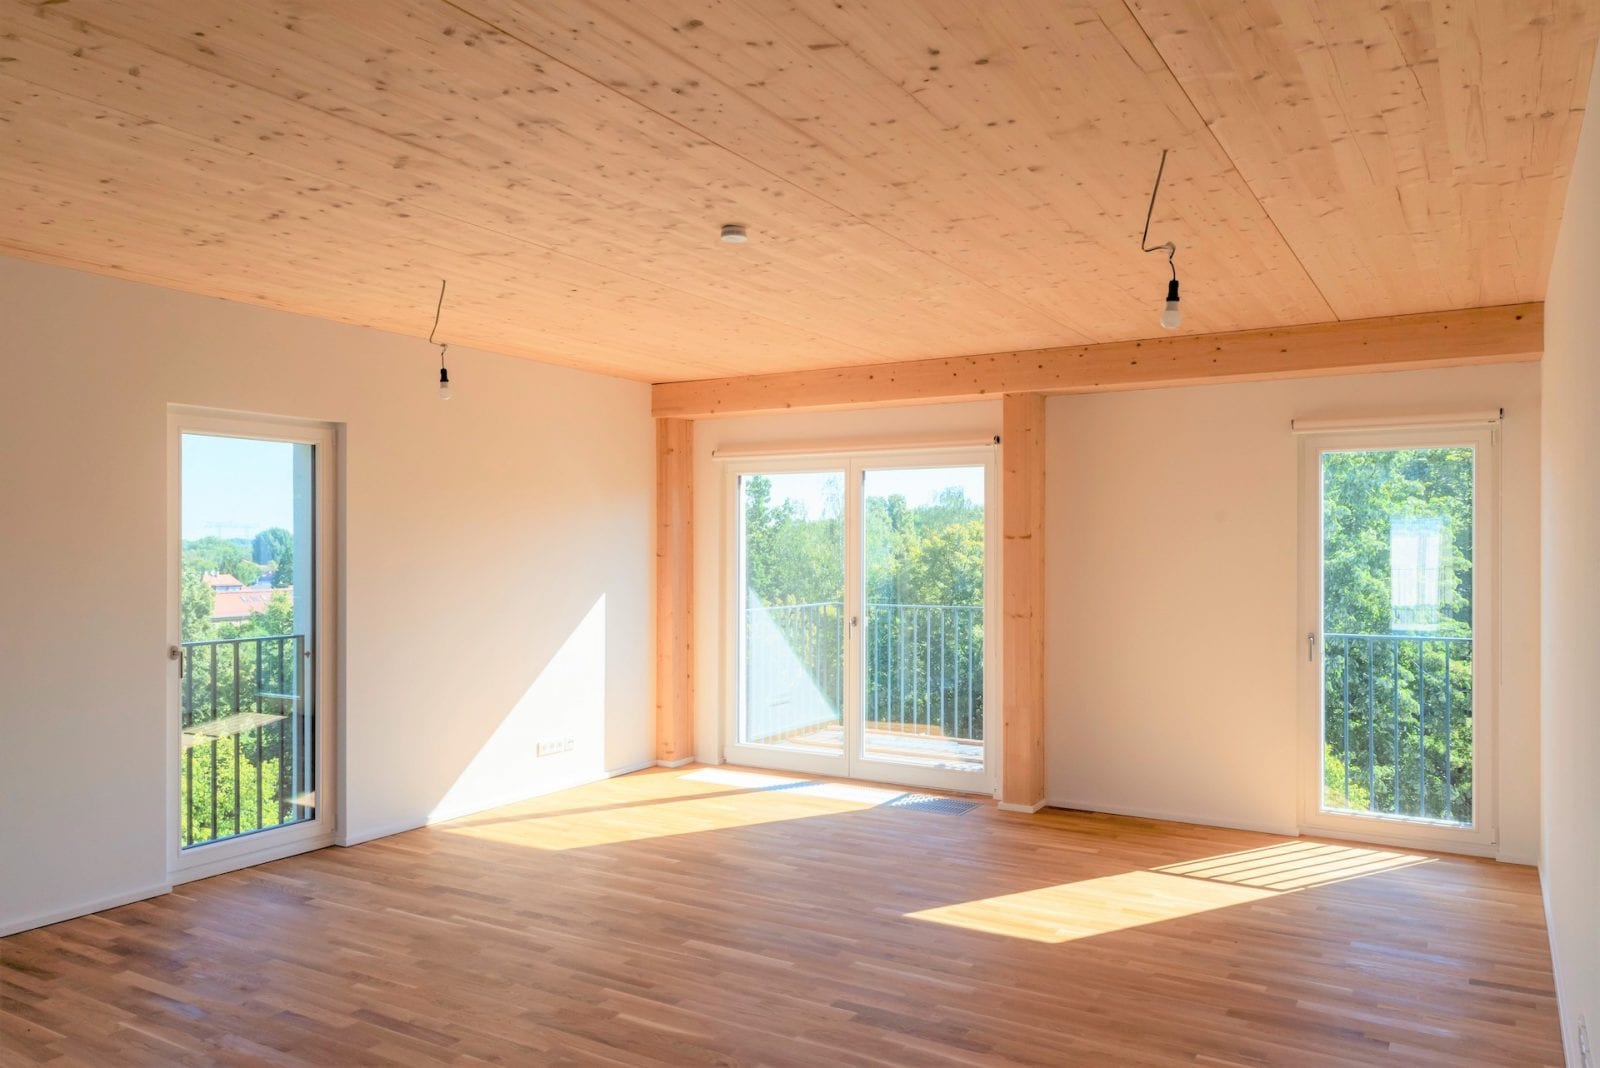 Wohnen mit Holz: Blick in eine Wohnung im Quartier WIR in Berlin-Weißensee (Foto: Erik-Jan Ouwerkerk)